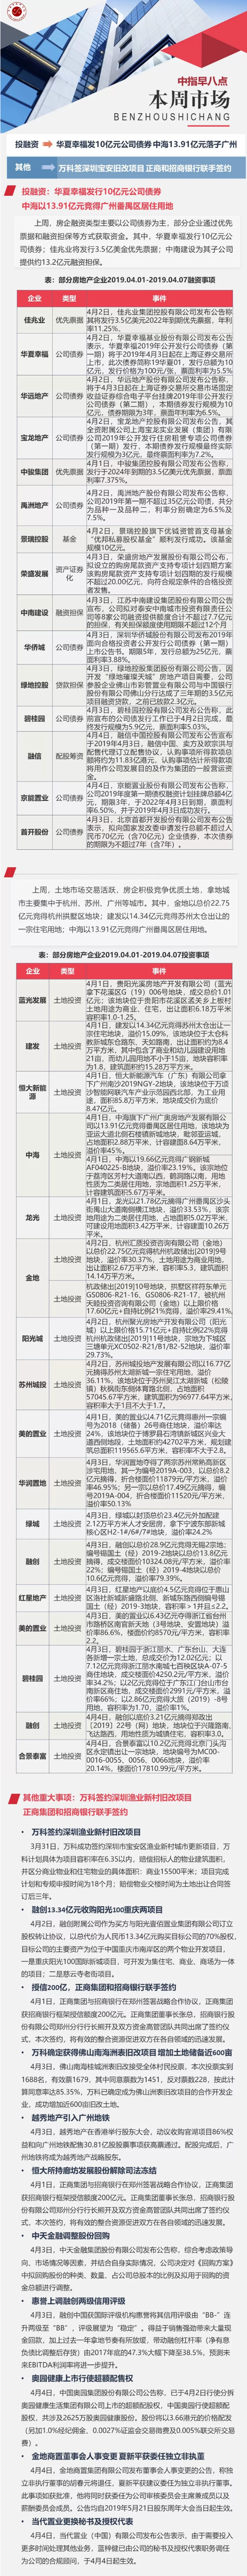 企业：华夏幸福发10亿元公司债券 中海13.91亿元落子广州